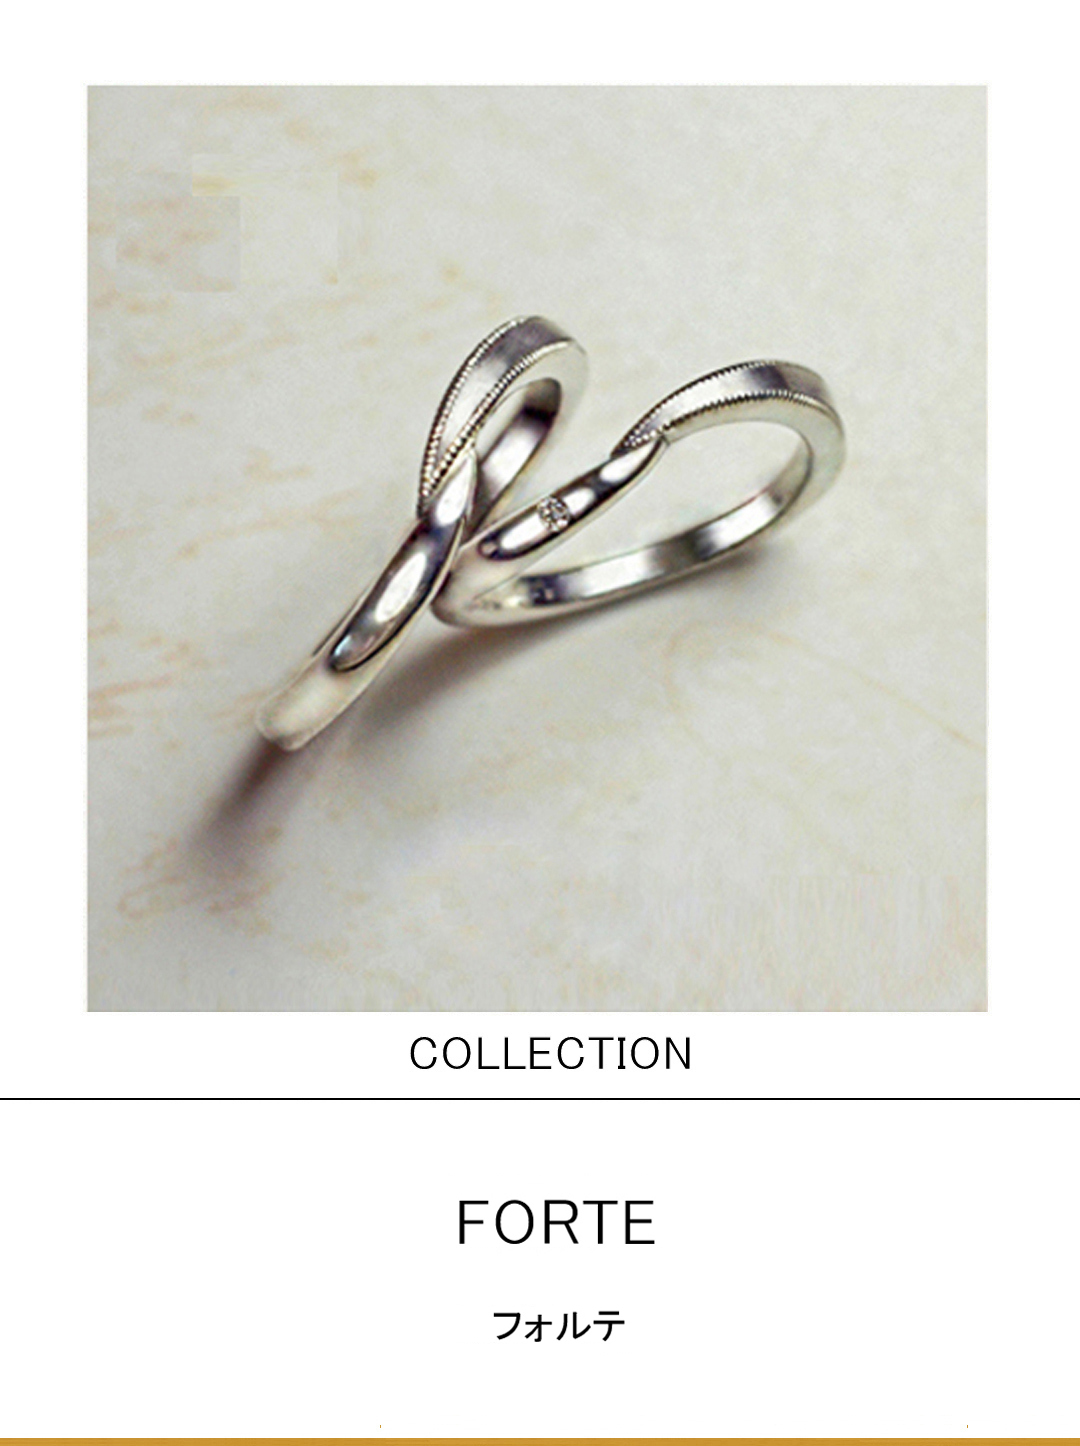 フォルテ・音符からデザインされたウェーブした結婚指輪コレクションのサムネイル